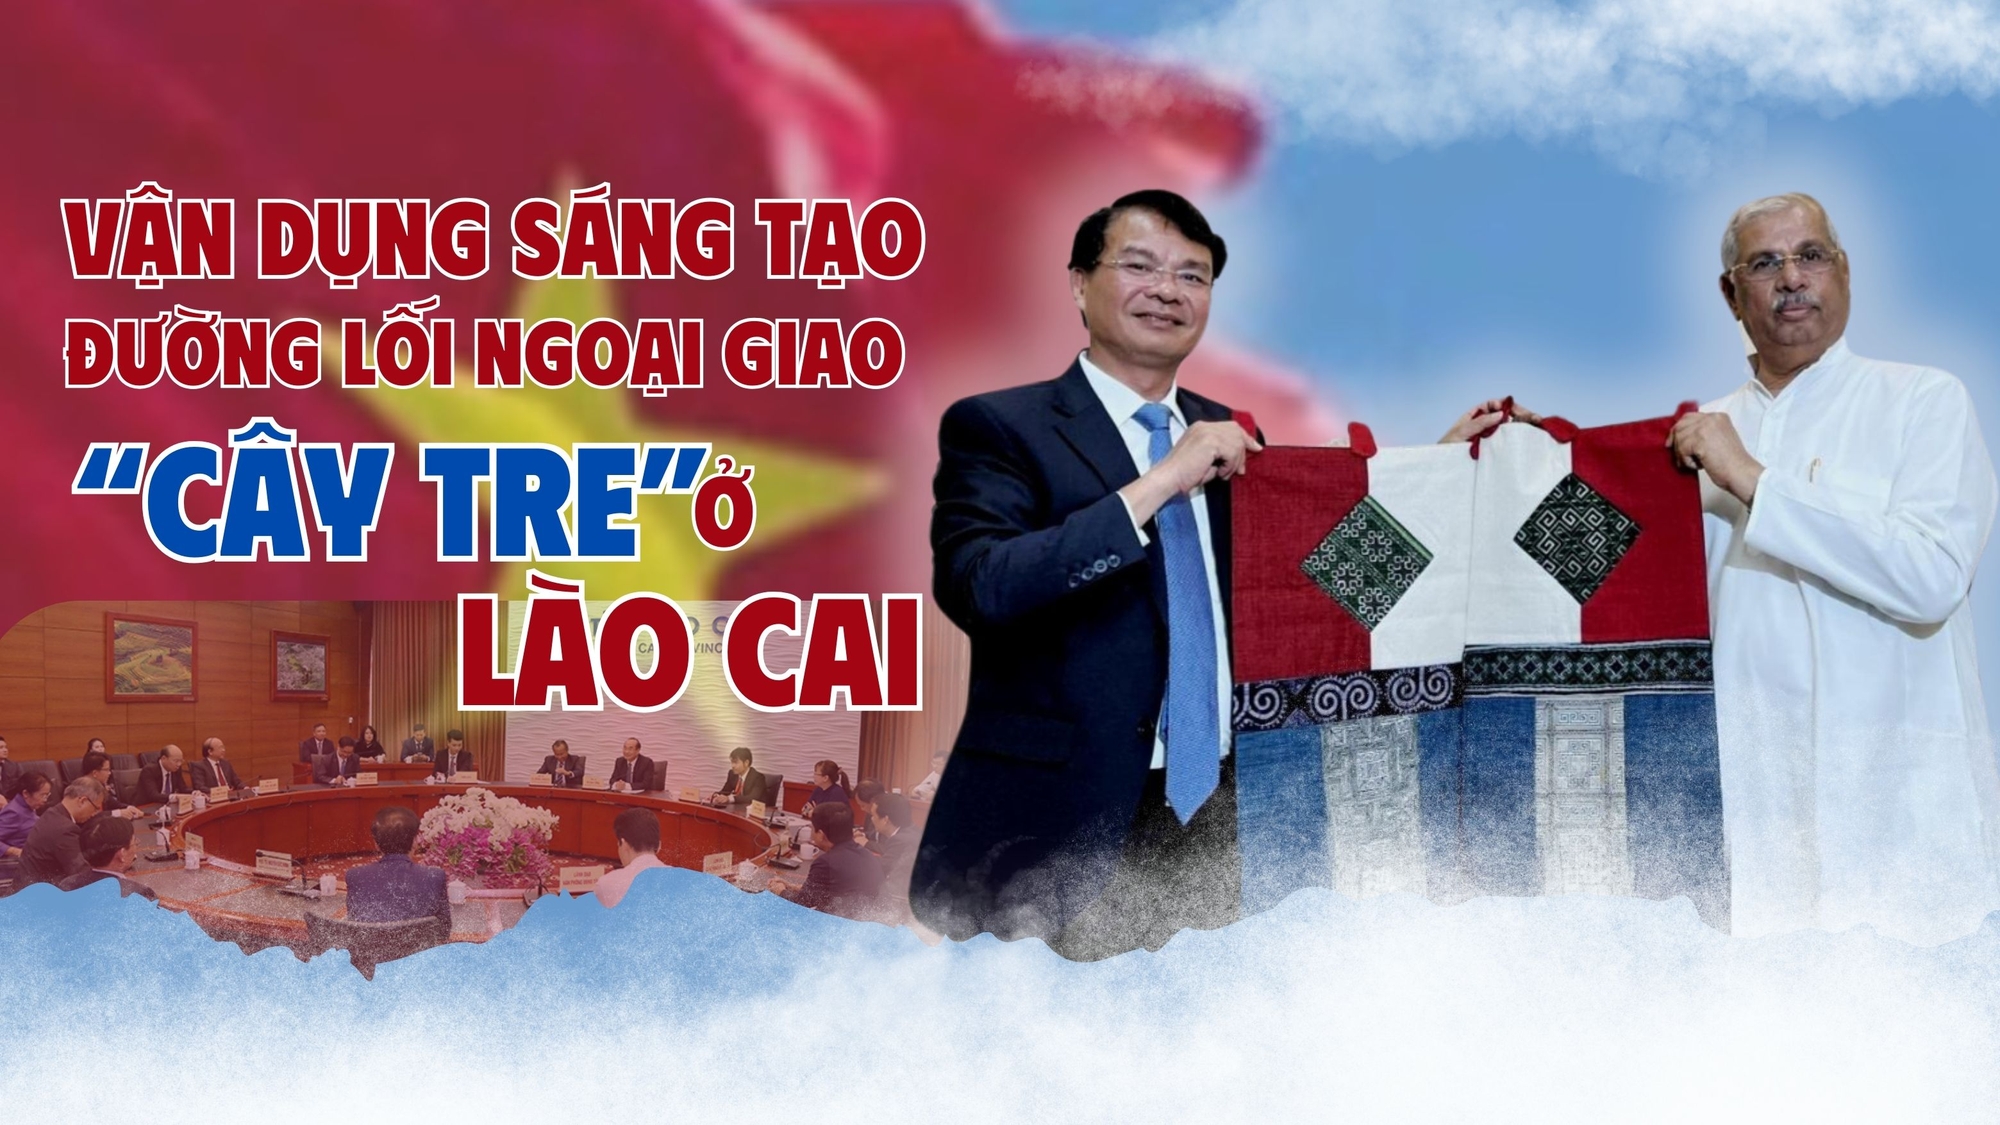 Vận dụng sáng tạo đường lối ngoại giao "cây tre" ở Lào Cai